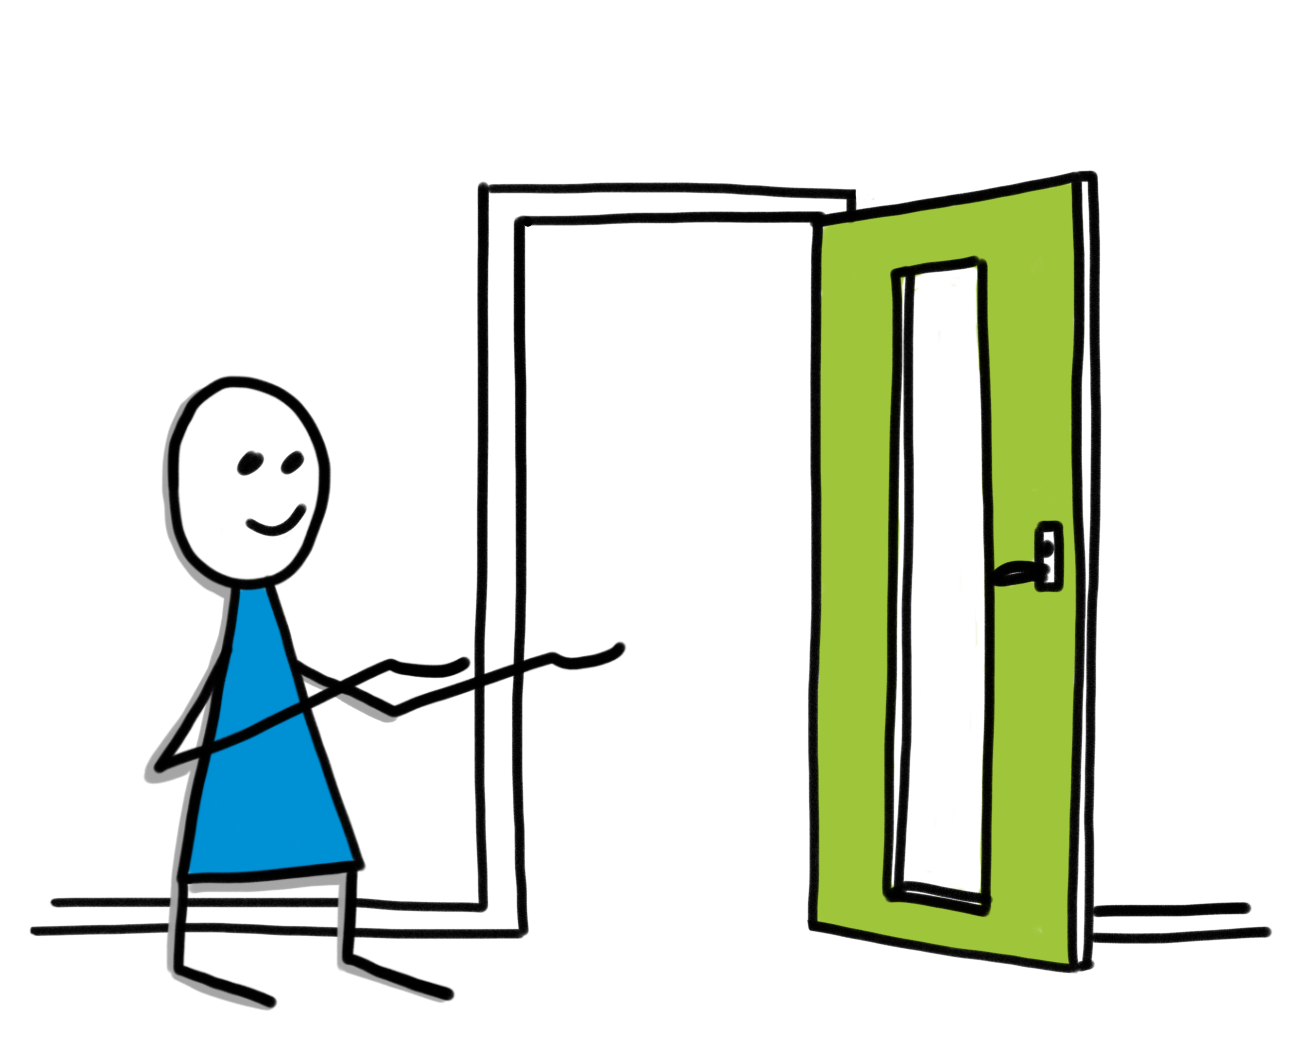 Tecknad bild av en blåkläddgubbe som håller armarna välkomnande in genom en öppen, grön dörr. Illustration E-kommunicera